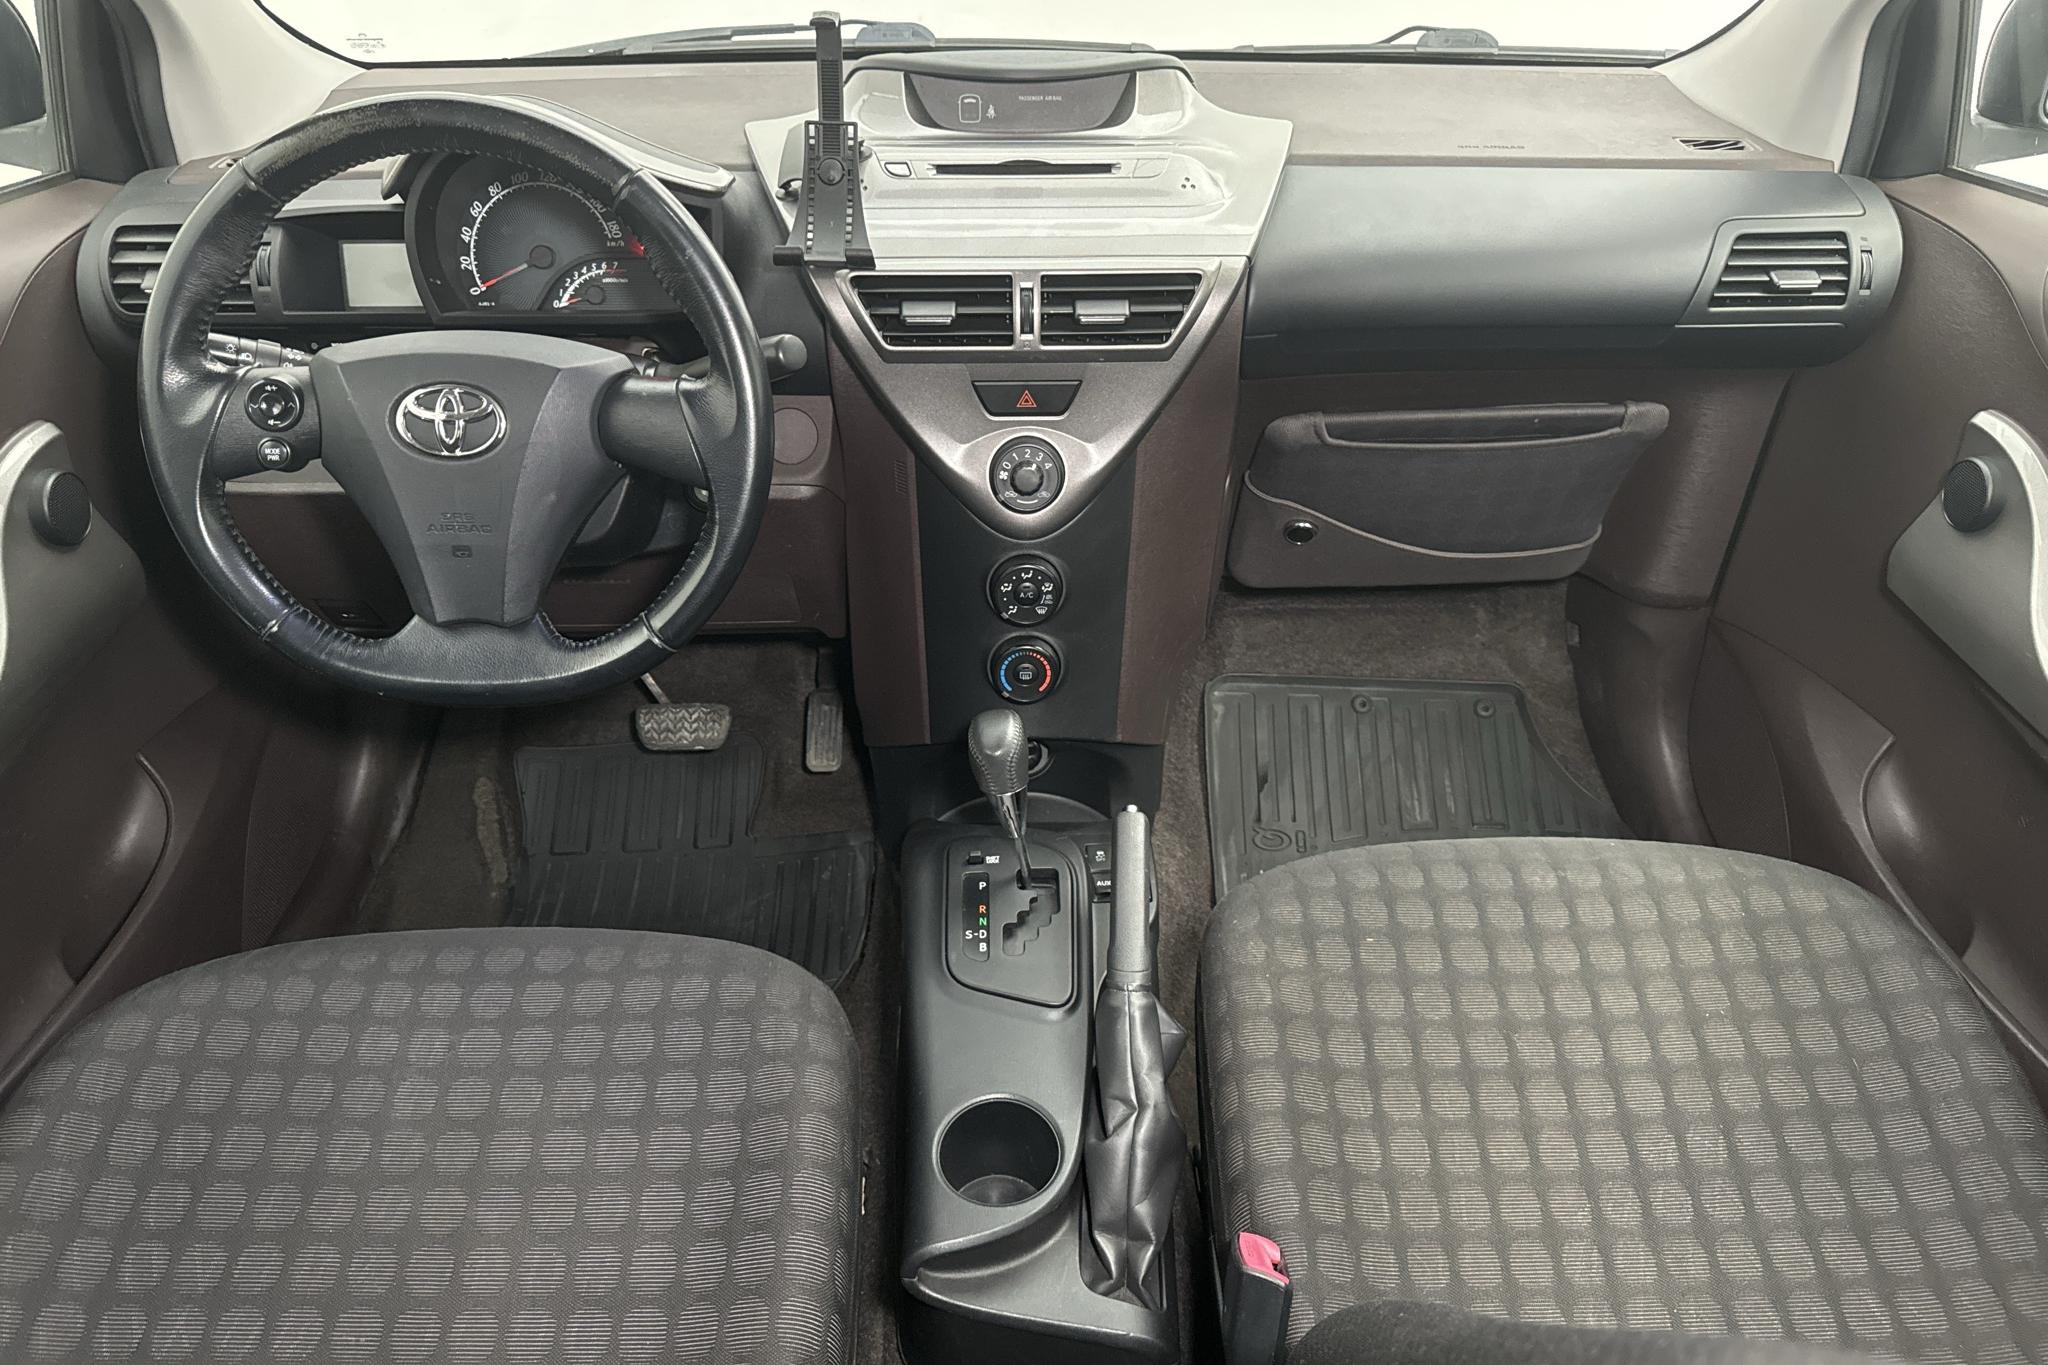 Toyota iQ 1.0 (68hk) - 119 570 km - Automaatne - 2009